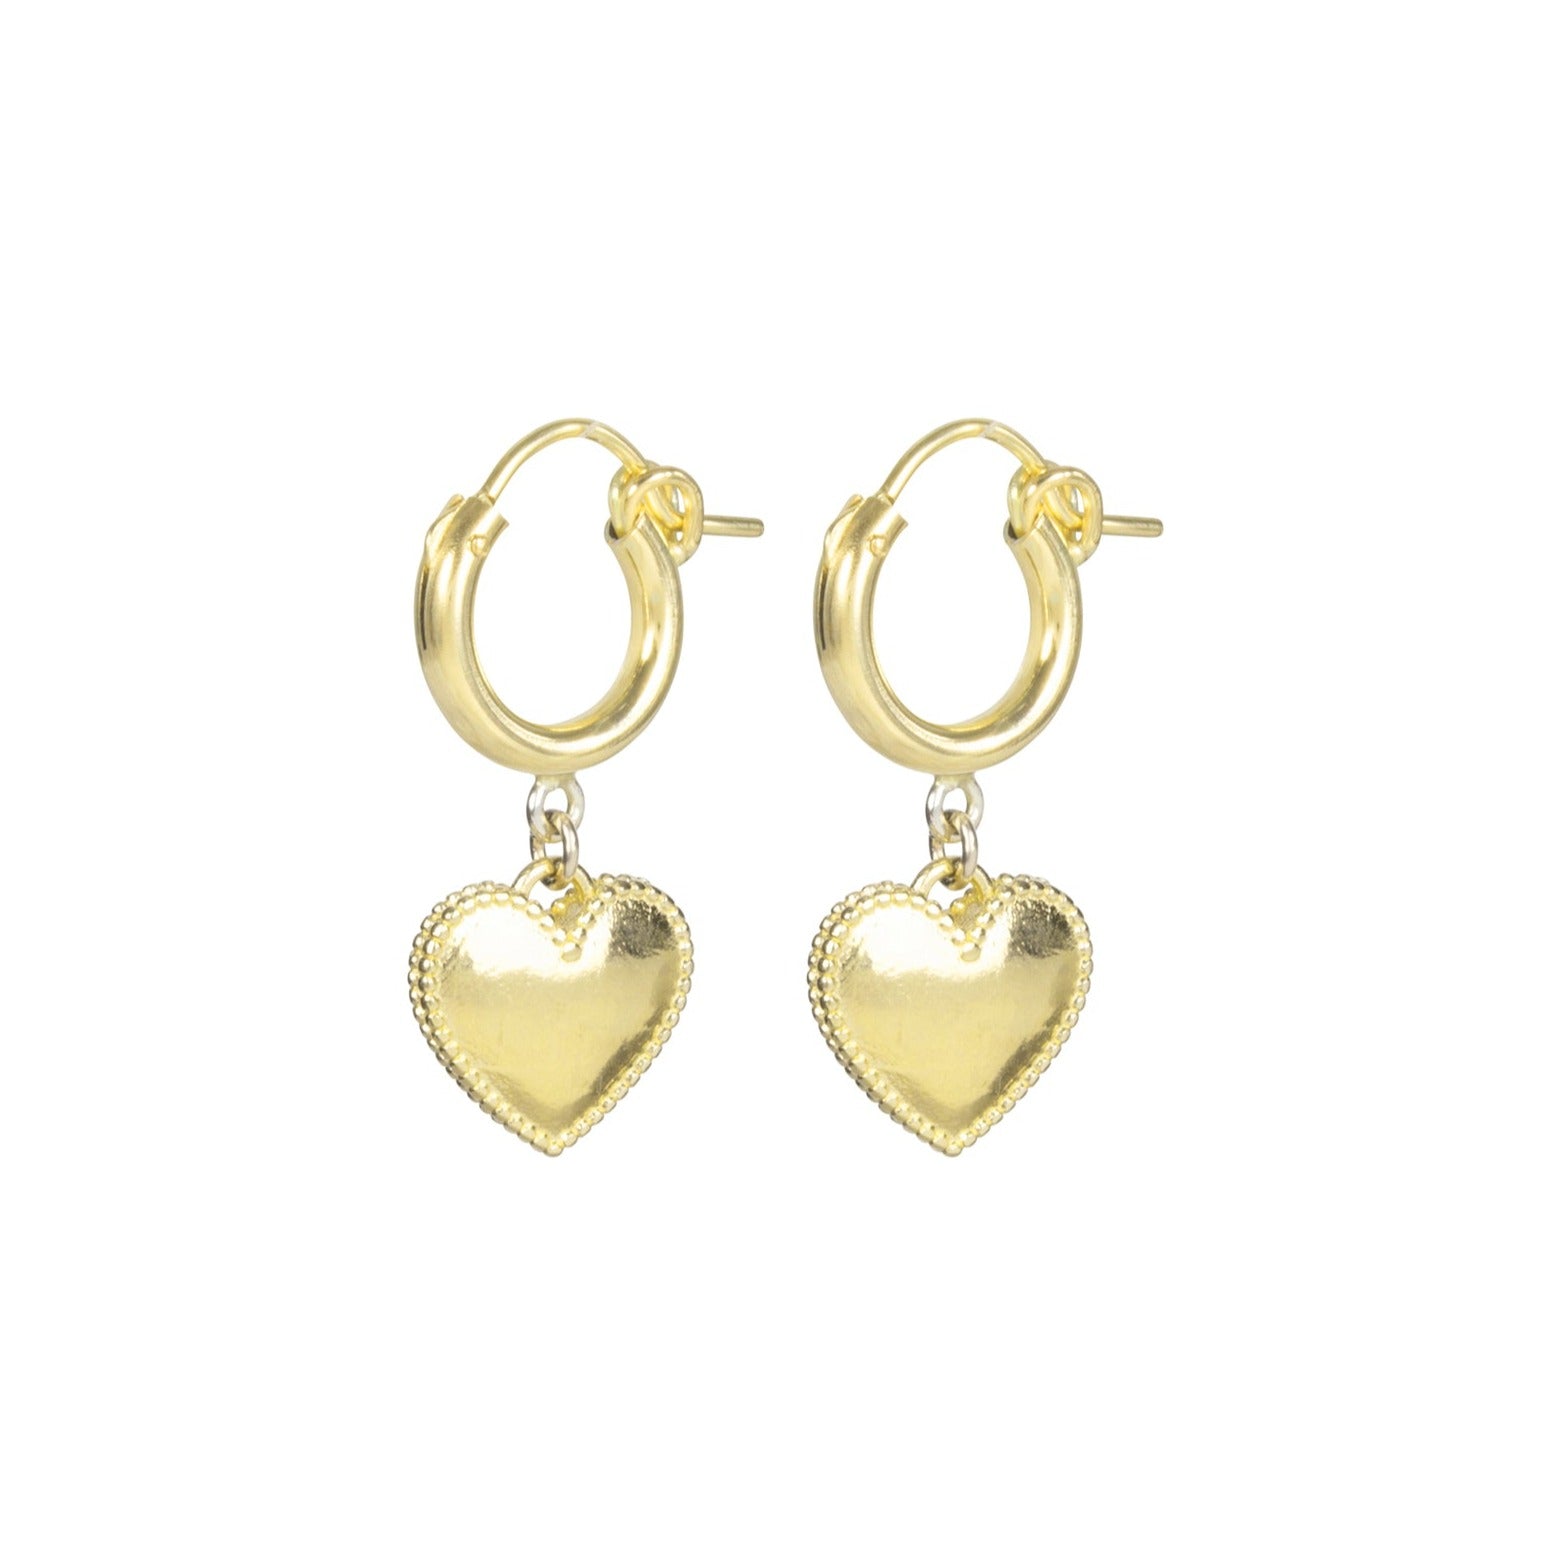 Gold Heart Earrings Heart Hoop Earrings Dainty Heart Hoops 